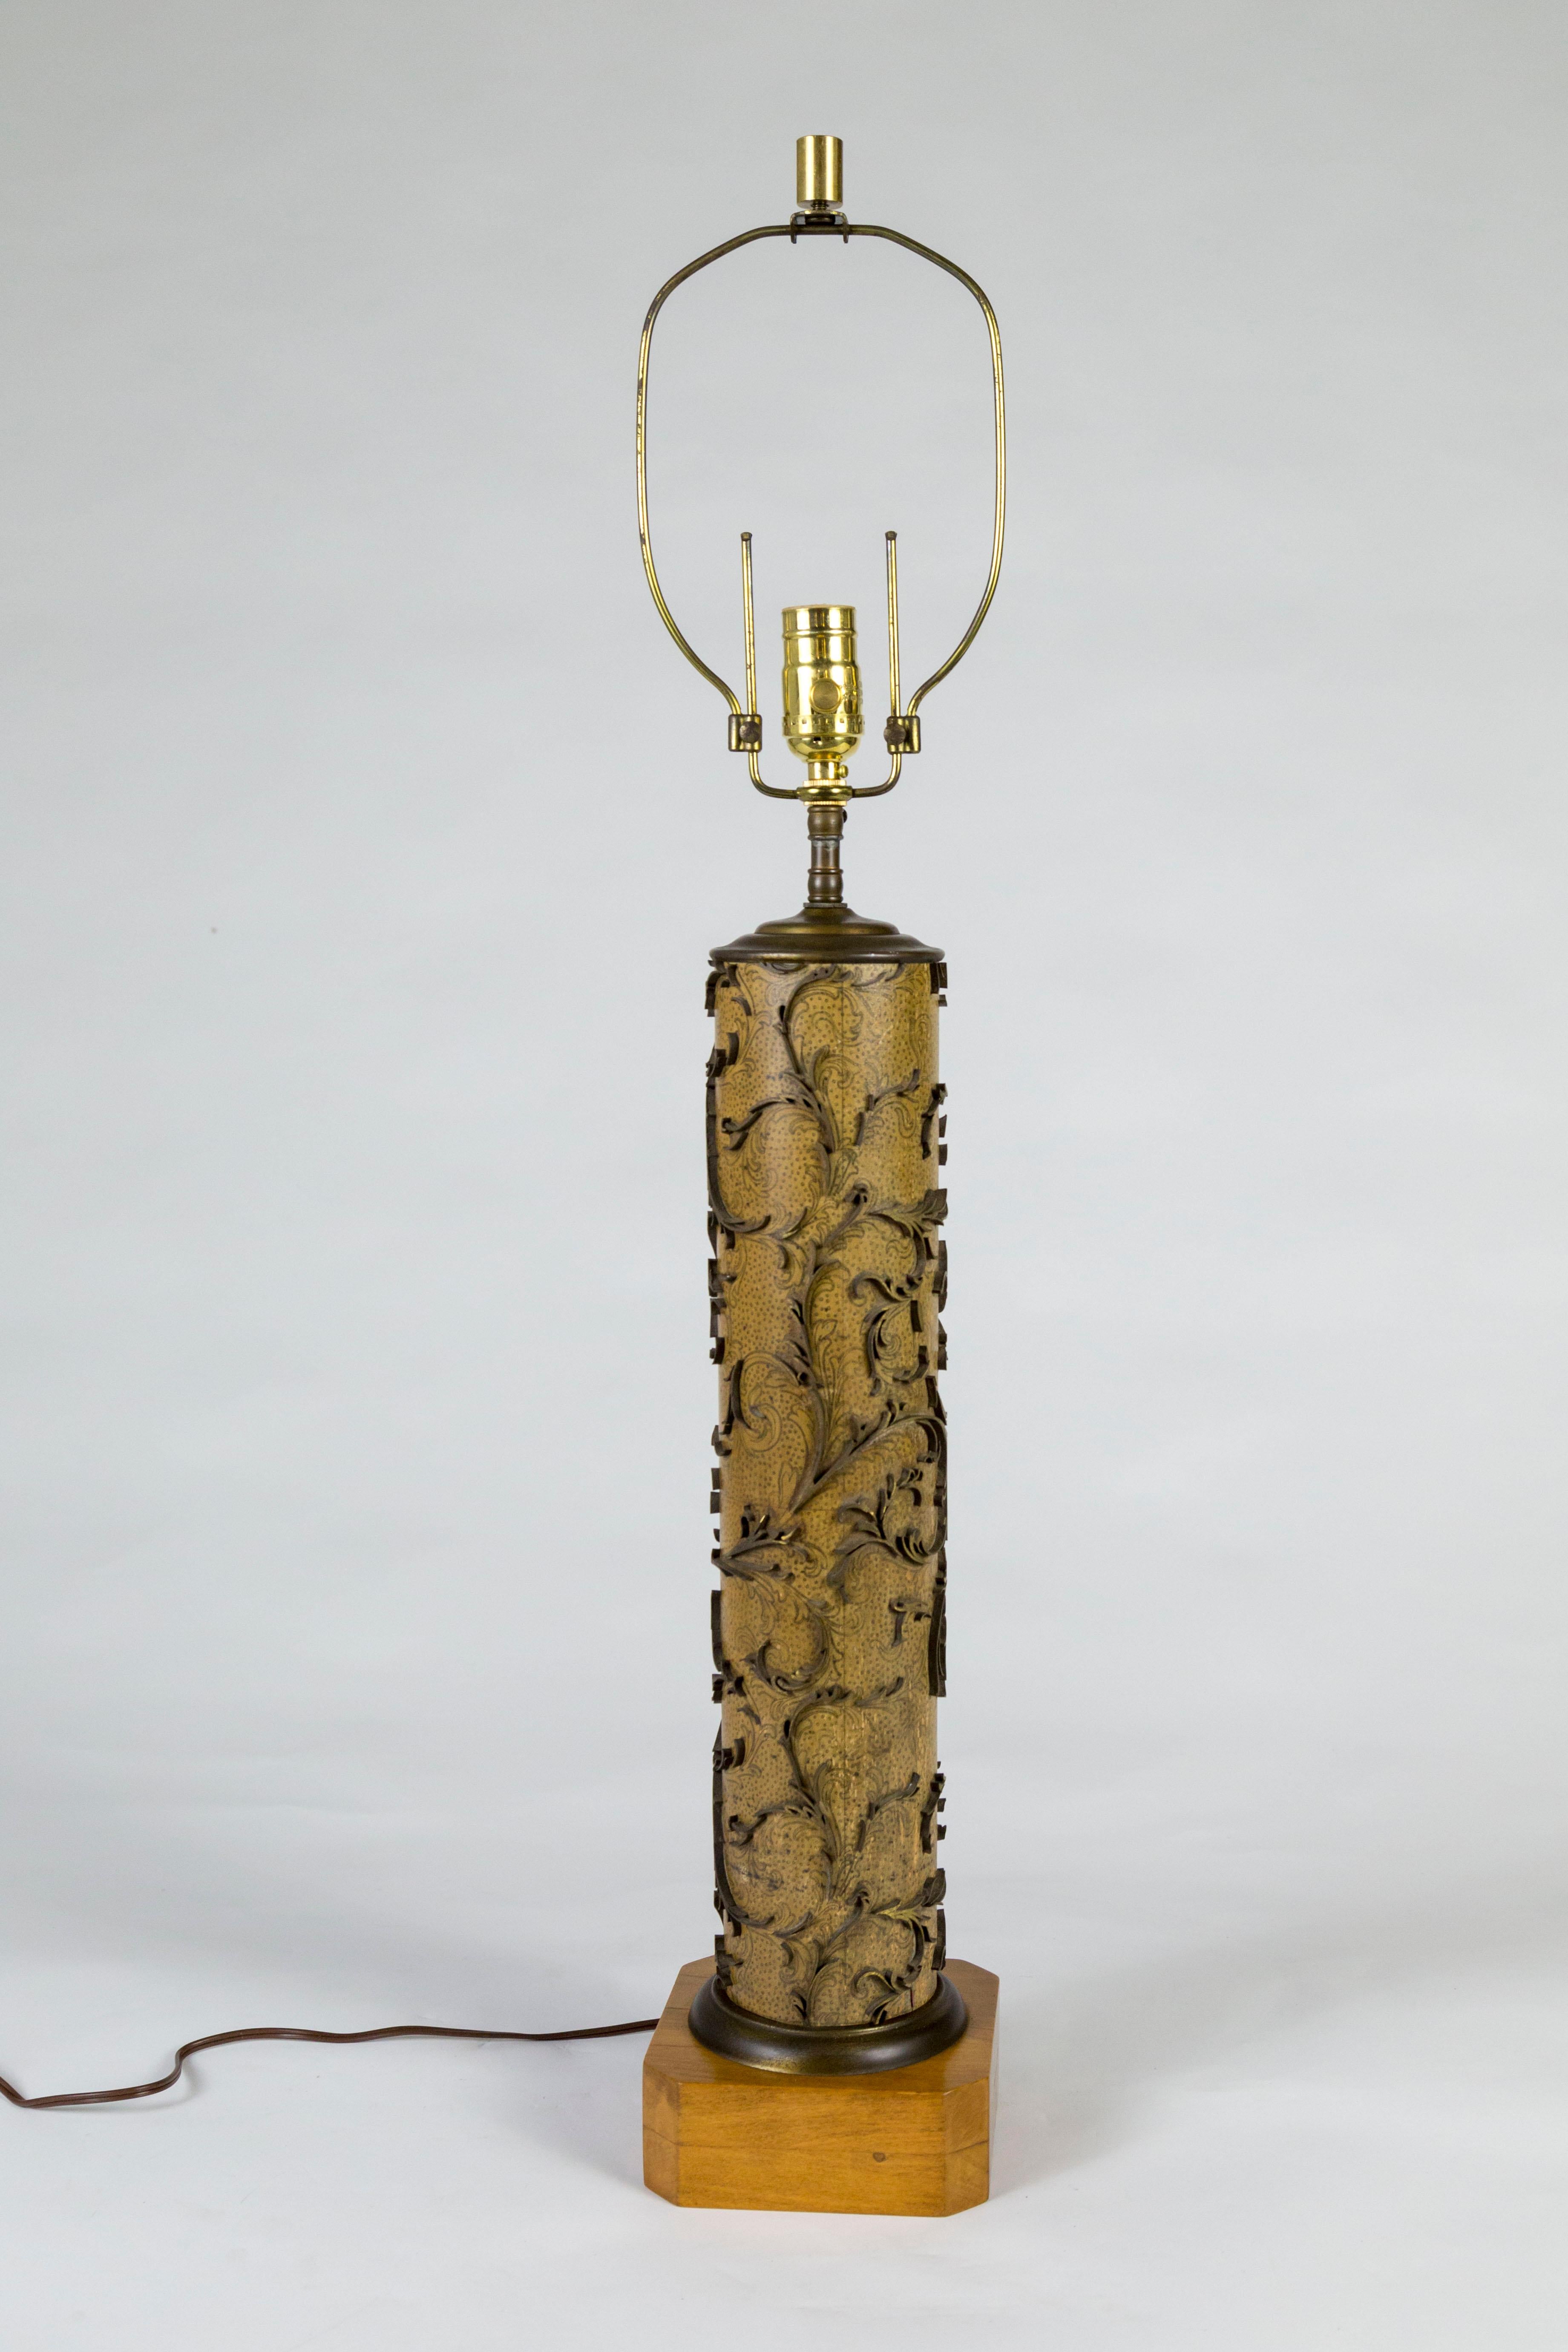 Une lampe fabriquée à partir d'un rouleau vintage pour l'impression de papier peint. Les éléments d'impression sont des feuilles tourbillonnantes en laiton ; montées sur une base carrée en bois ; harpe réglable, nouvellement câblée avec un variateur